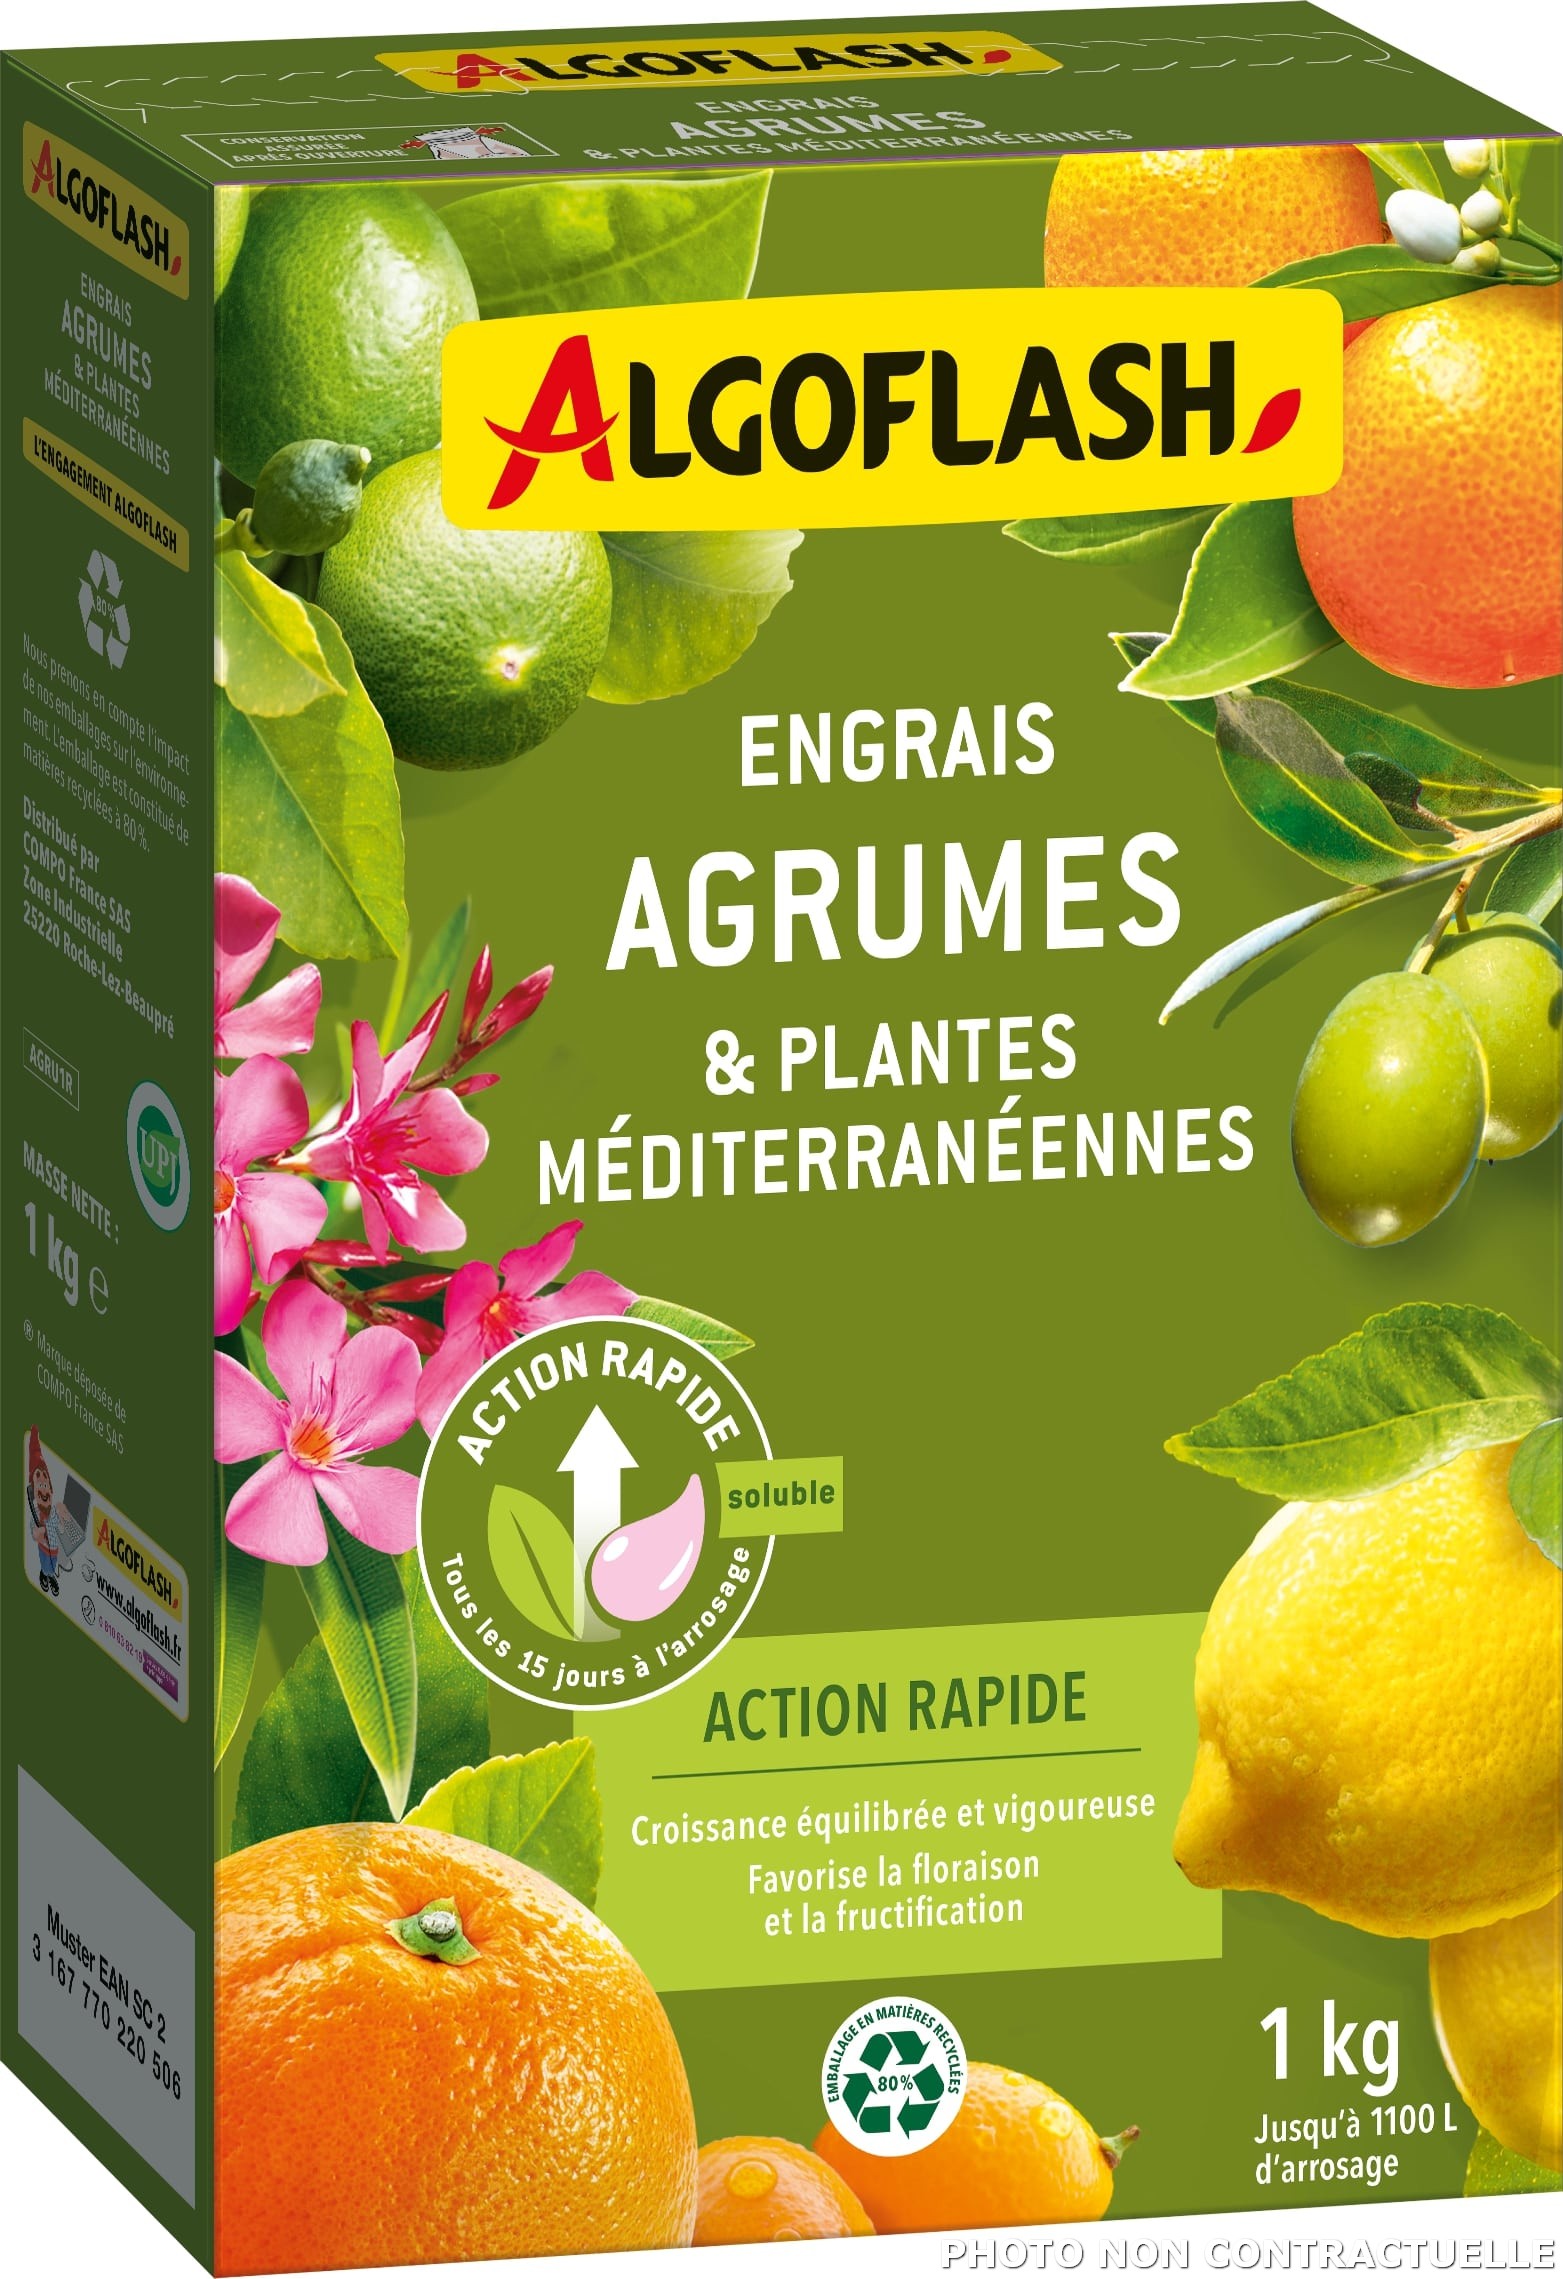 Engrais Agrumes et Plantes Méditerranéennes Action rapide 1 kg